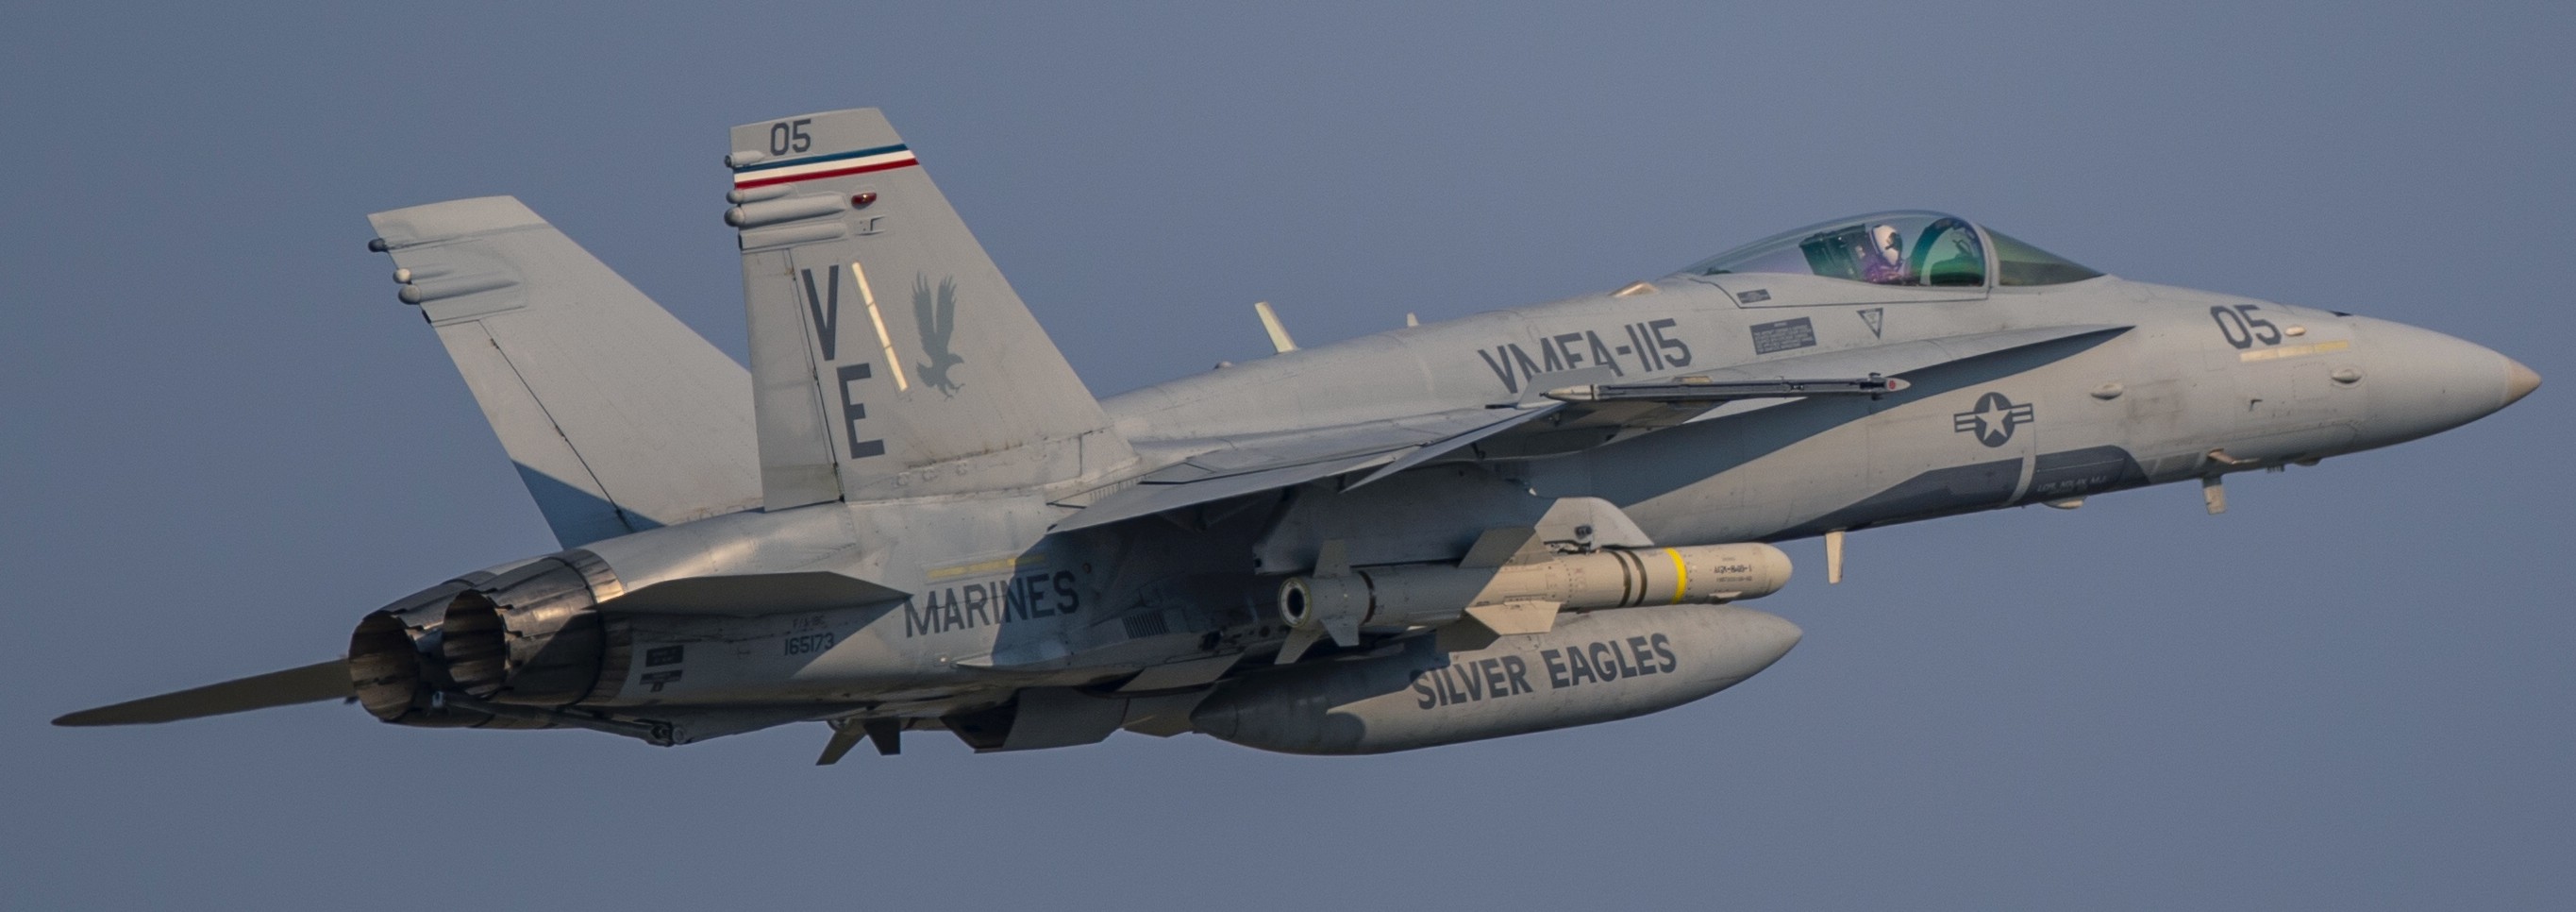 vmfa-115 silver eagles marine fighter attack squadron usmc f/a-18c hornet 197 mcas iwakuni